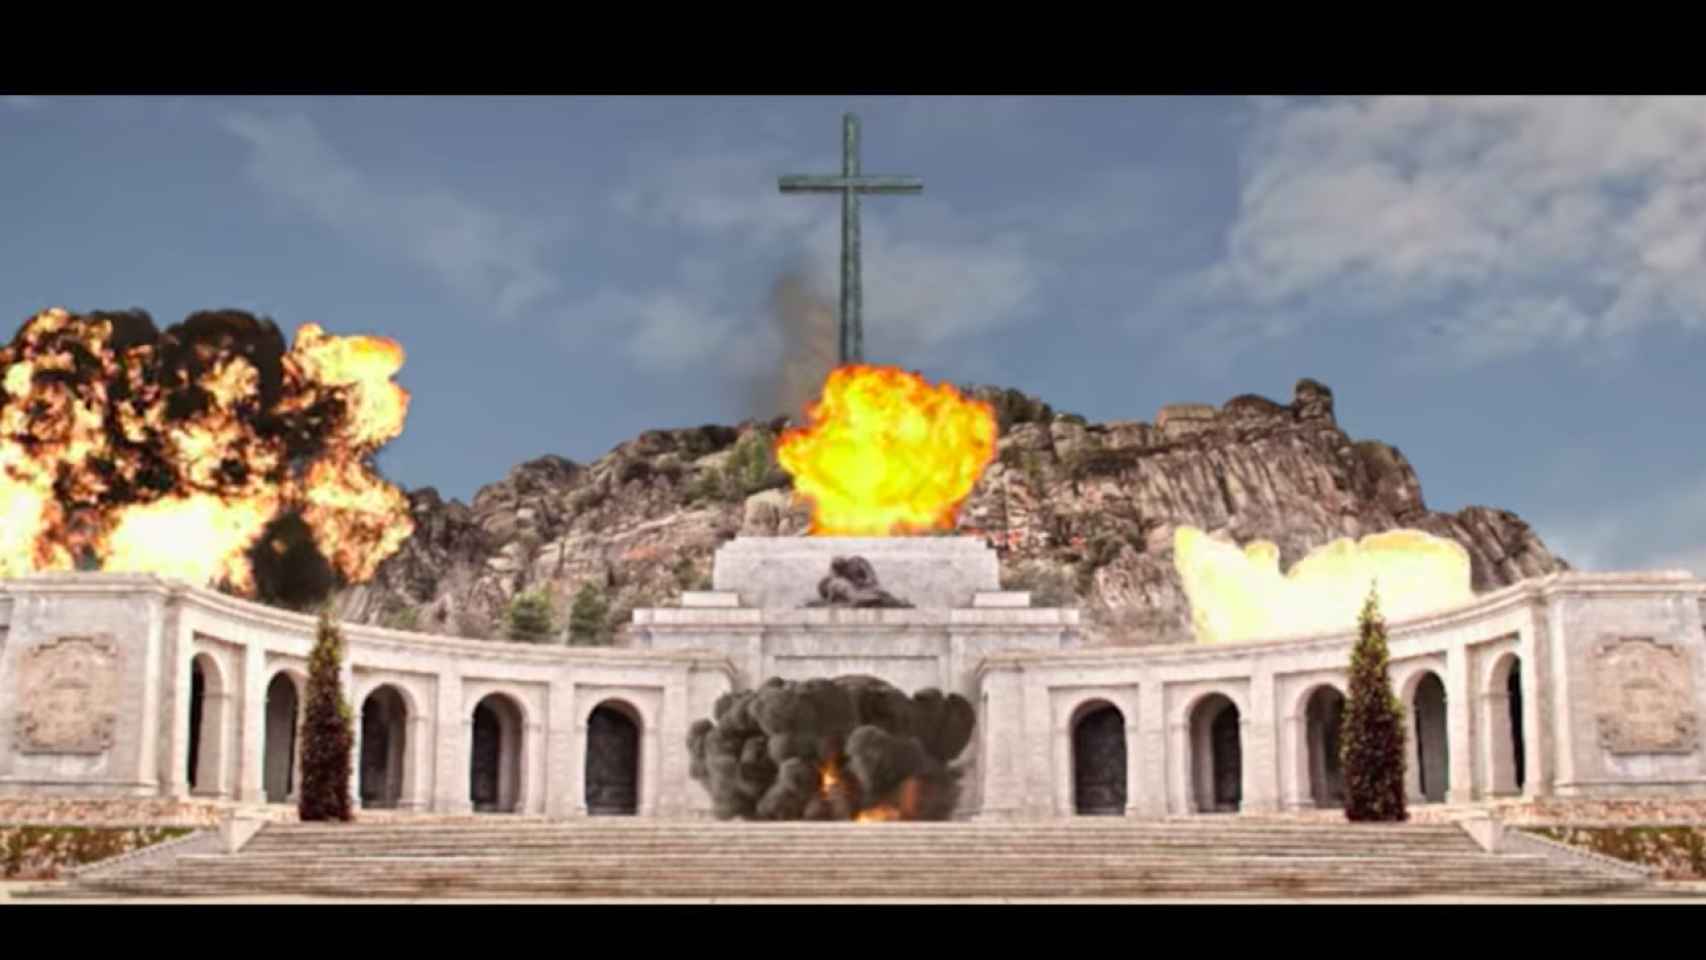 Una imagen del Valle de los Caídos ardiendo en llamas / Youtube